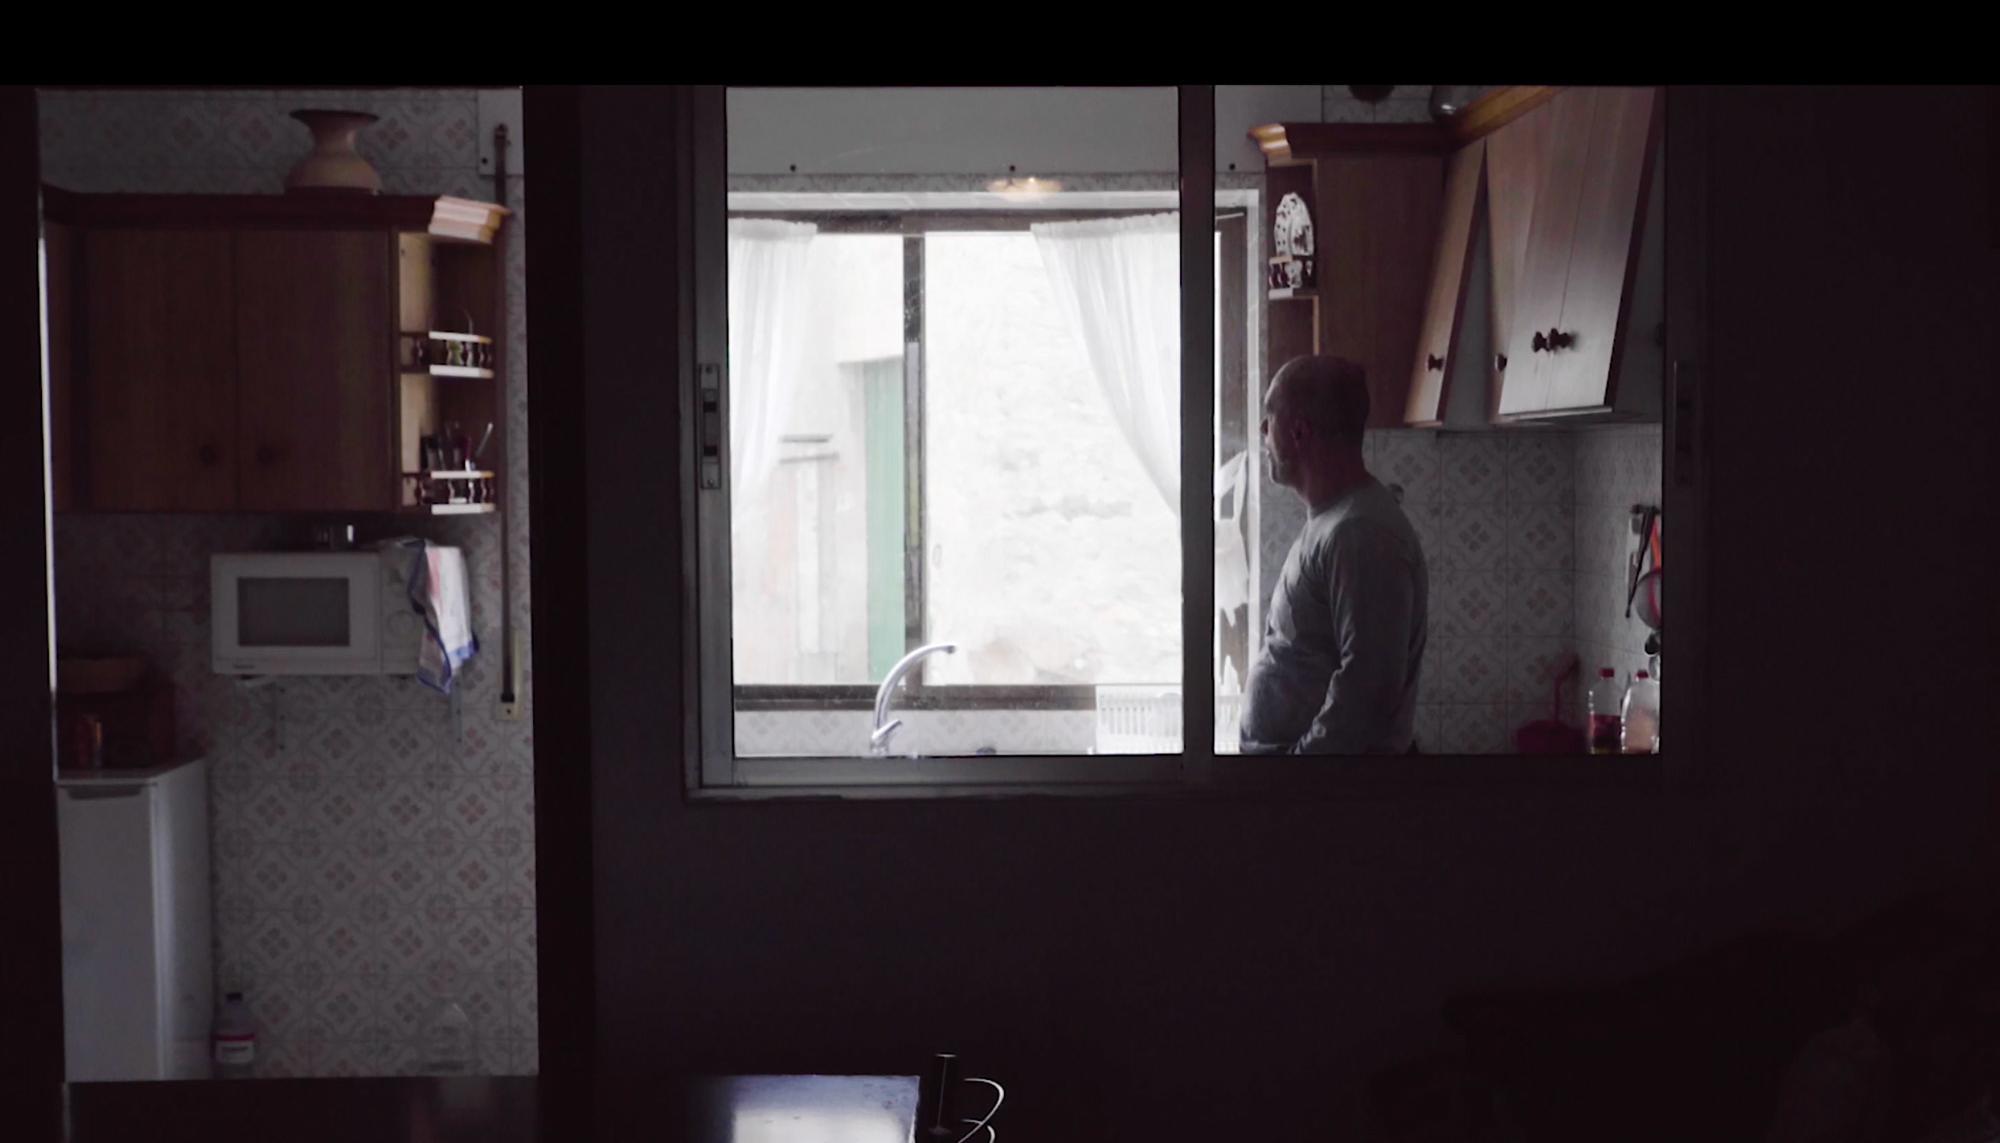 Arges Artiaga, en su casa en el corto documental ‘Furtivo’